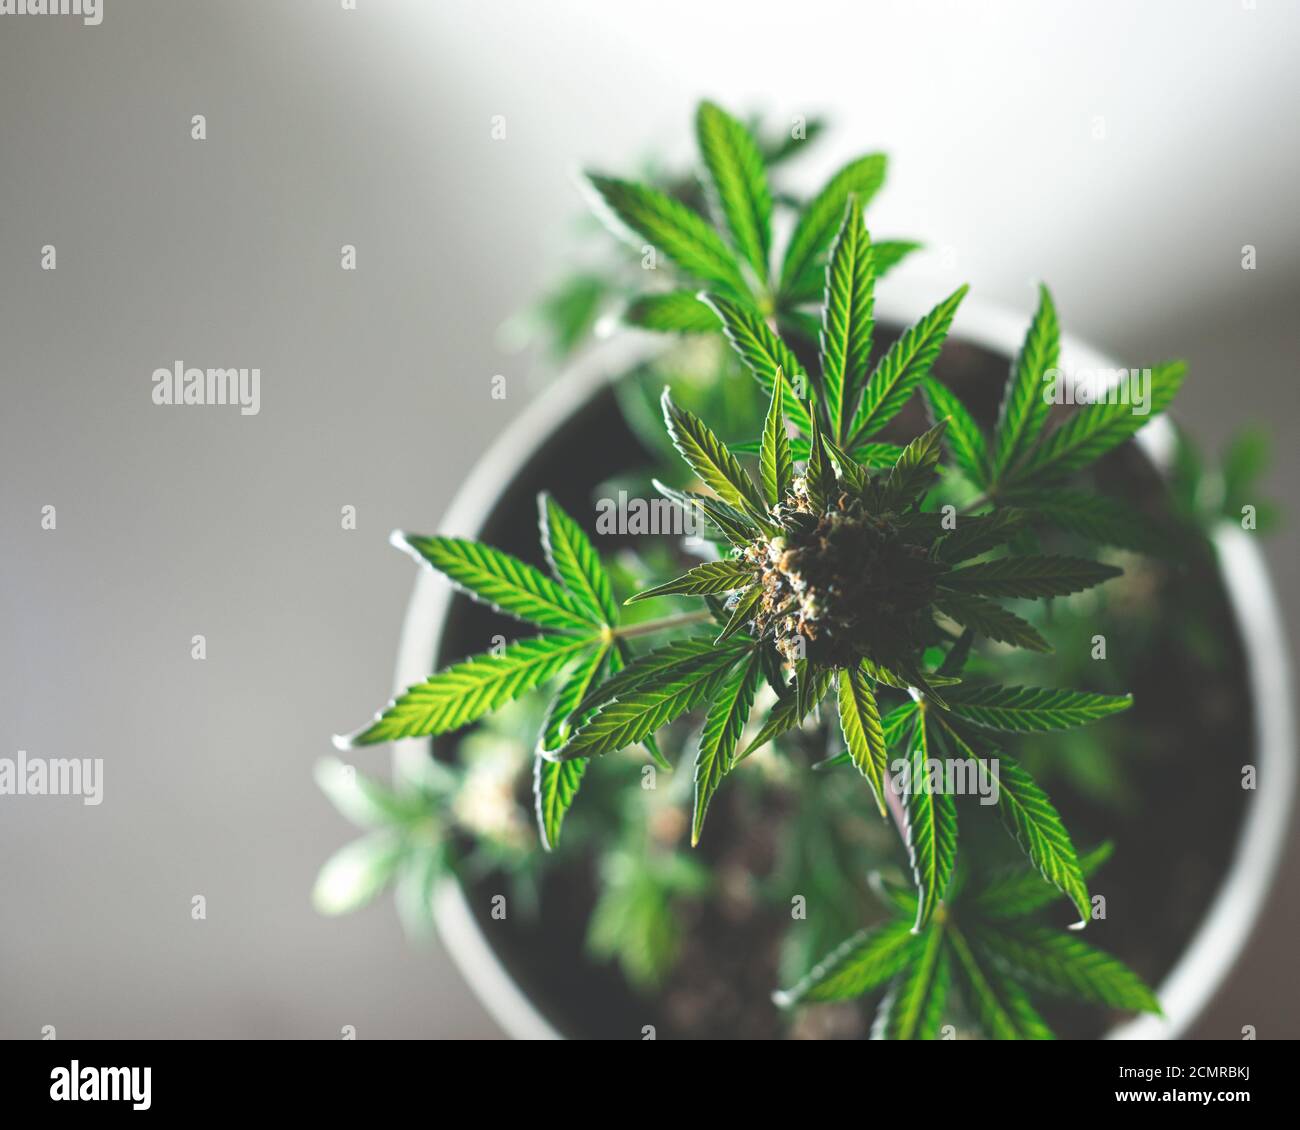 Cannabis Busch Draufsicht in Blumentopf auf grauem Hintergrund Stockfoto